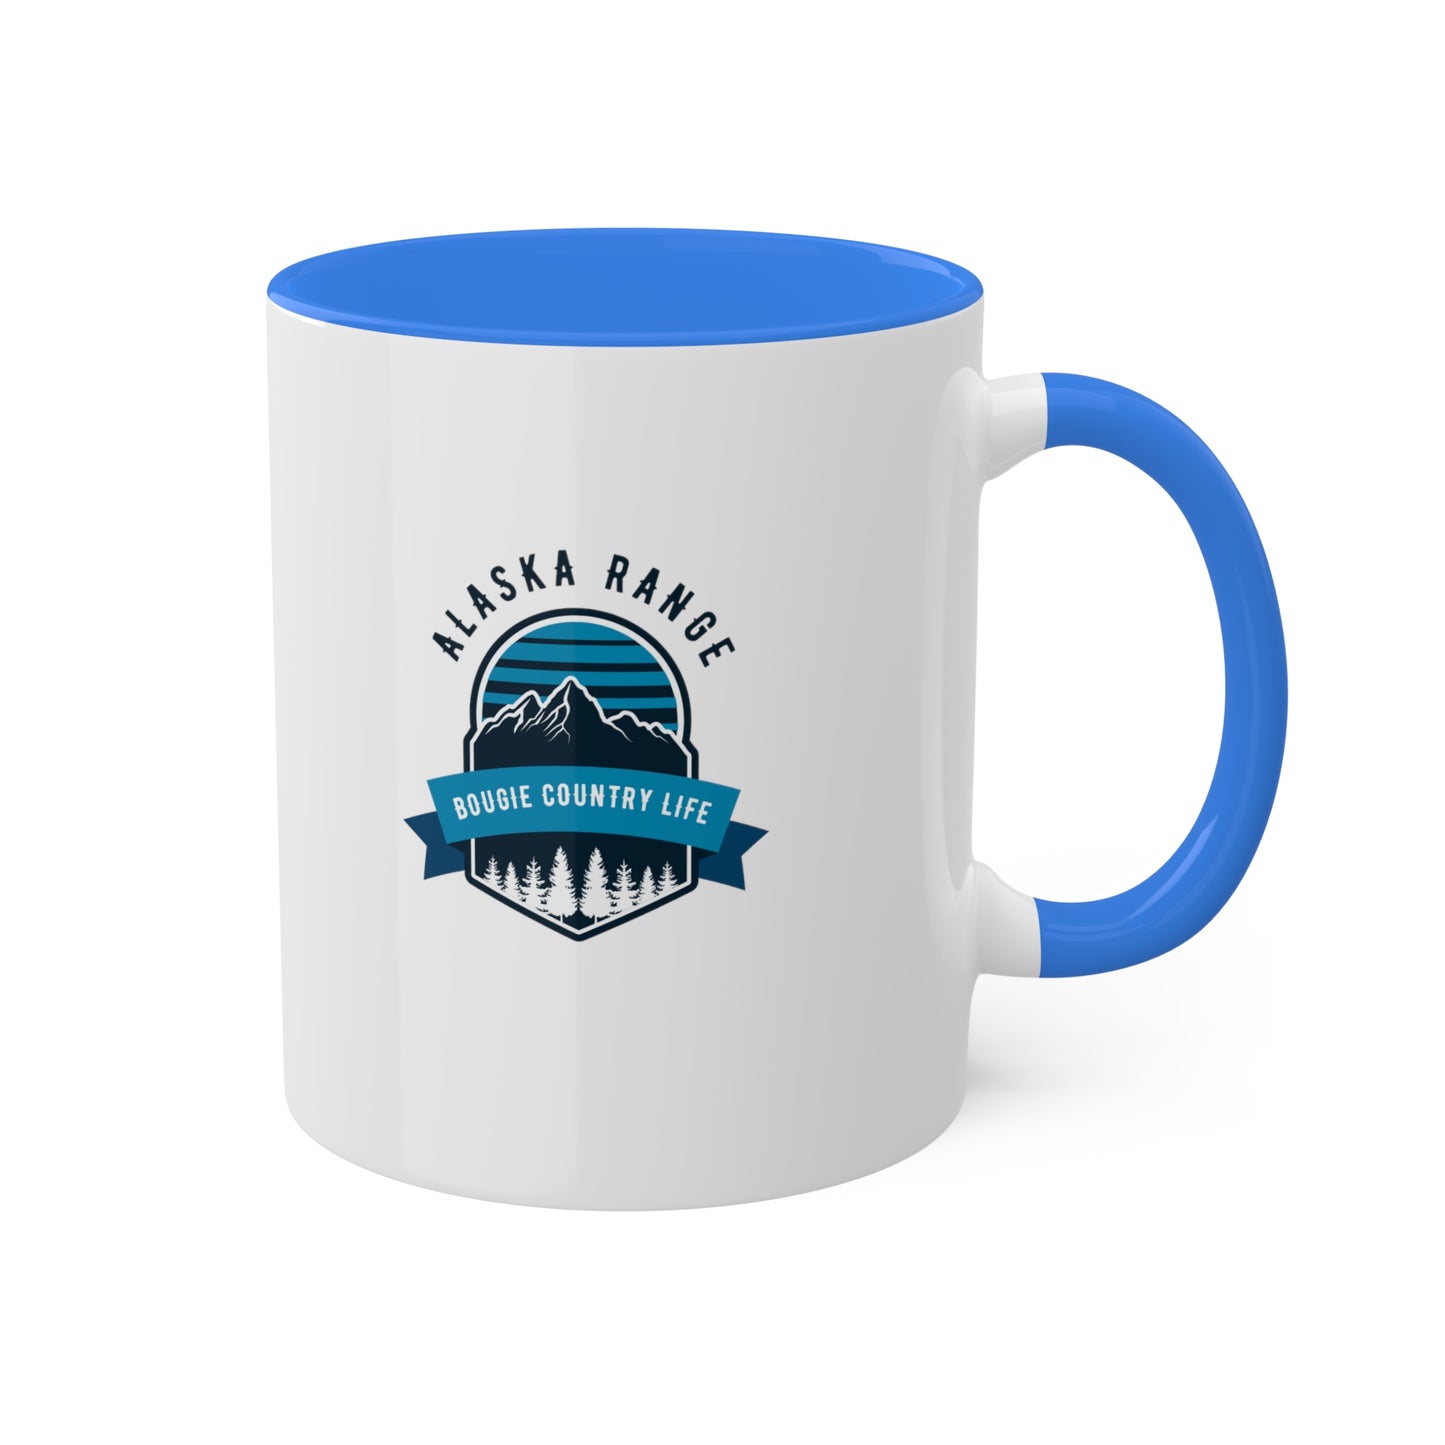 Alaska Range (Bougie Country Life) Mug